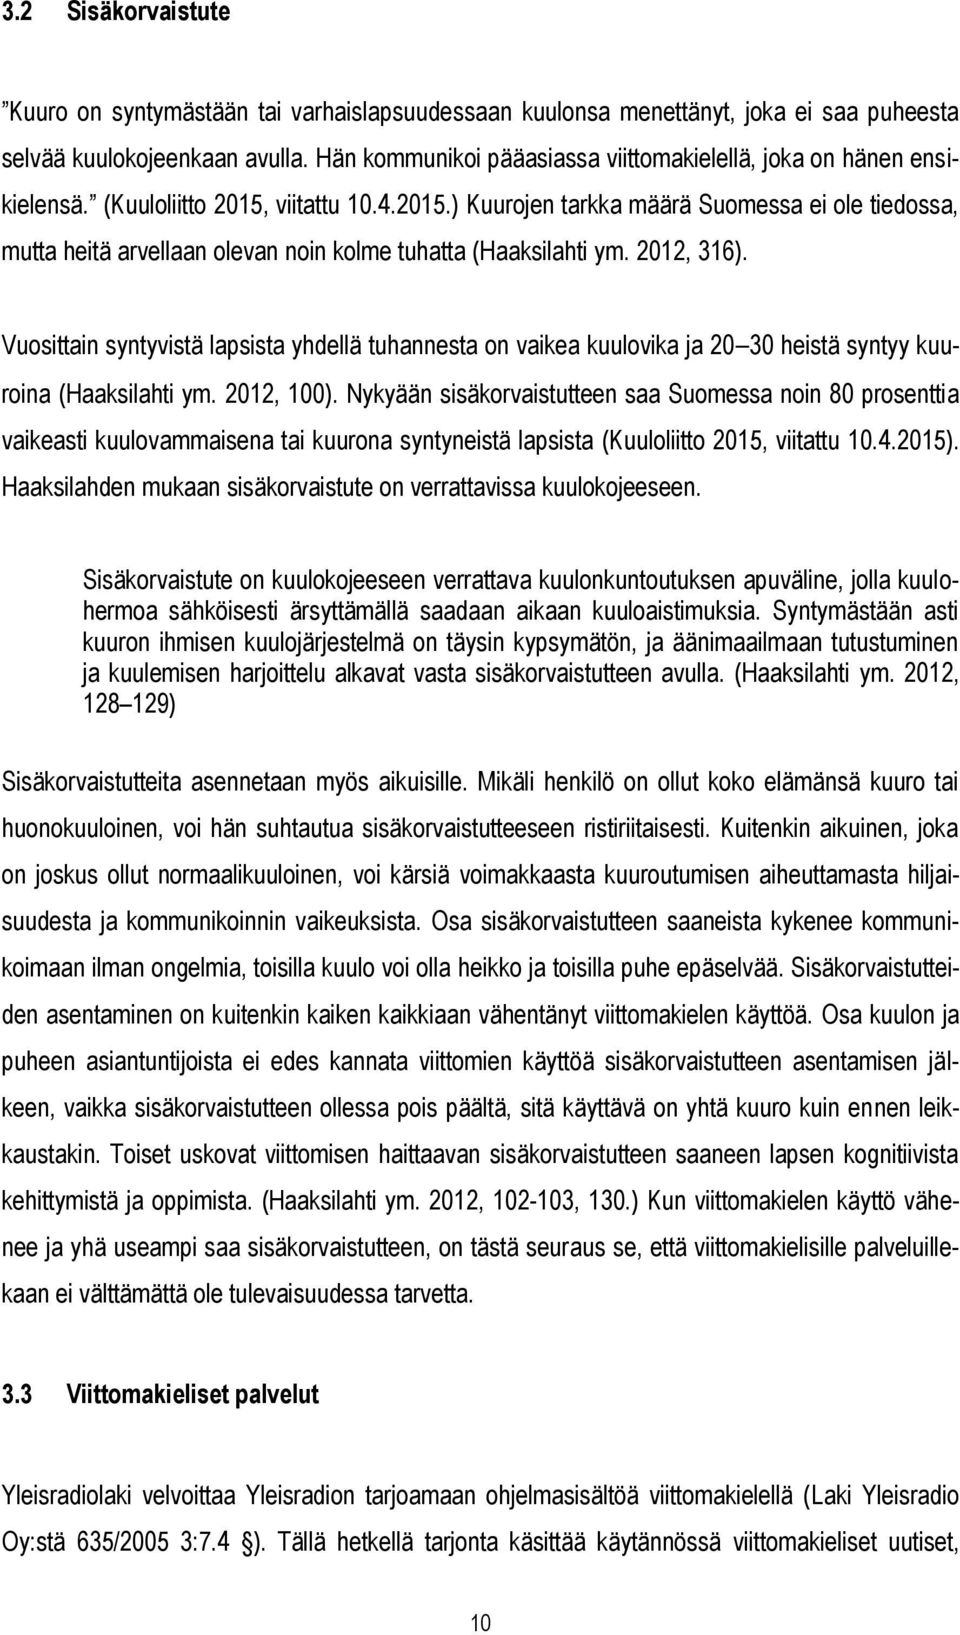 viitattu 10.4.2015.) Kuurojen tarkka määrä Suomessa ei ole tiedossa, mutta heitä arvellaan olevan noin kolme tuhatta (Haaksilahti ym. 2012, 316).